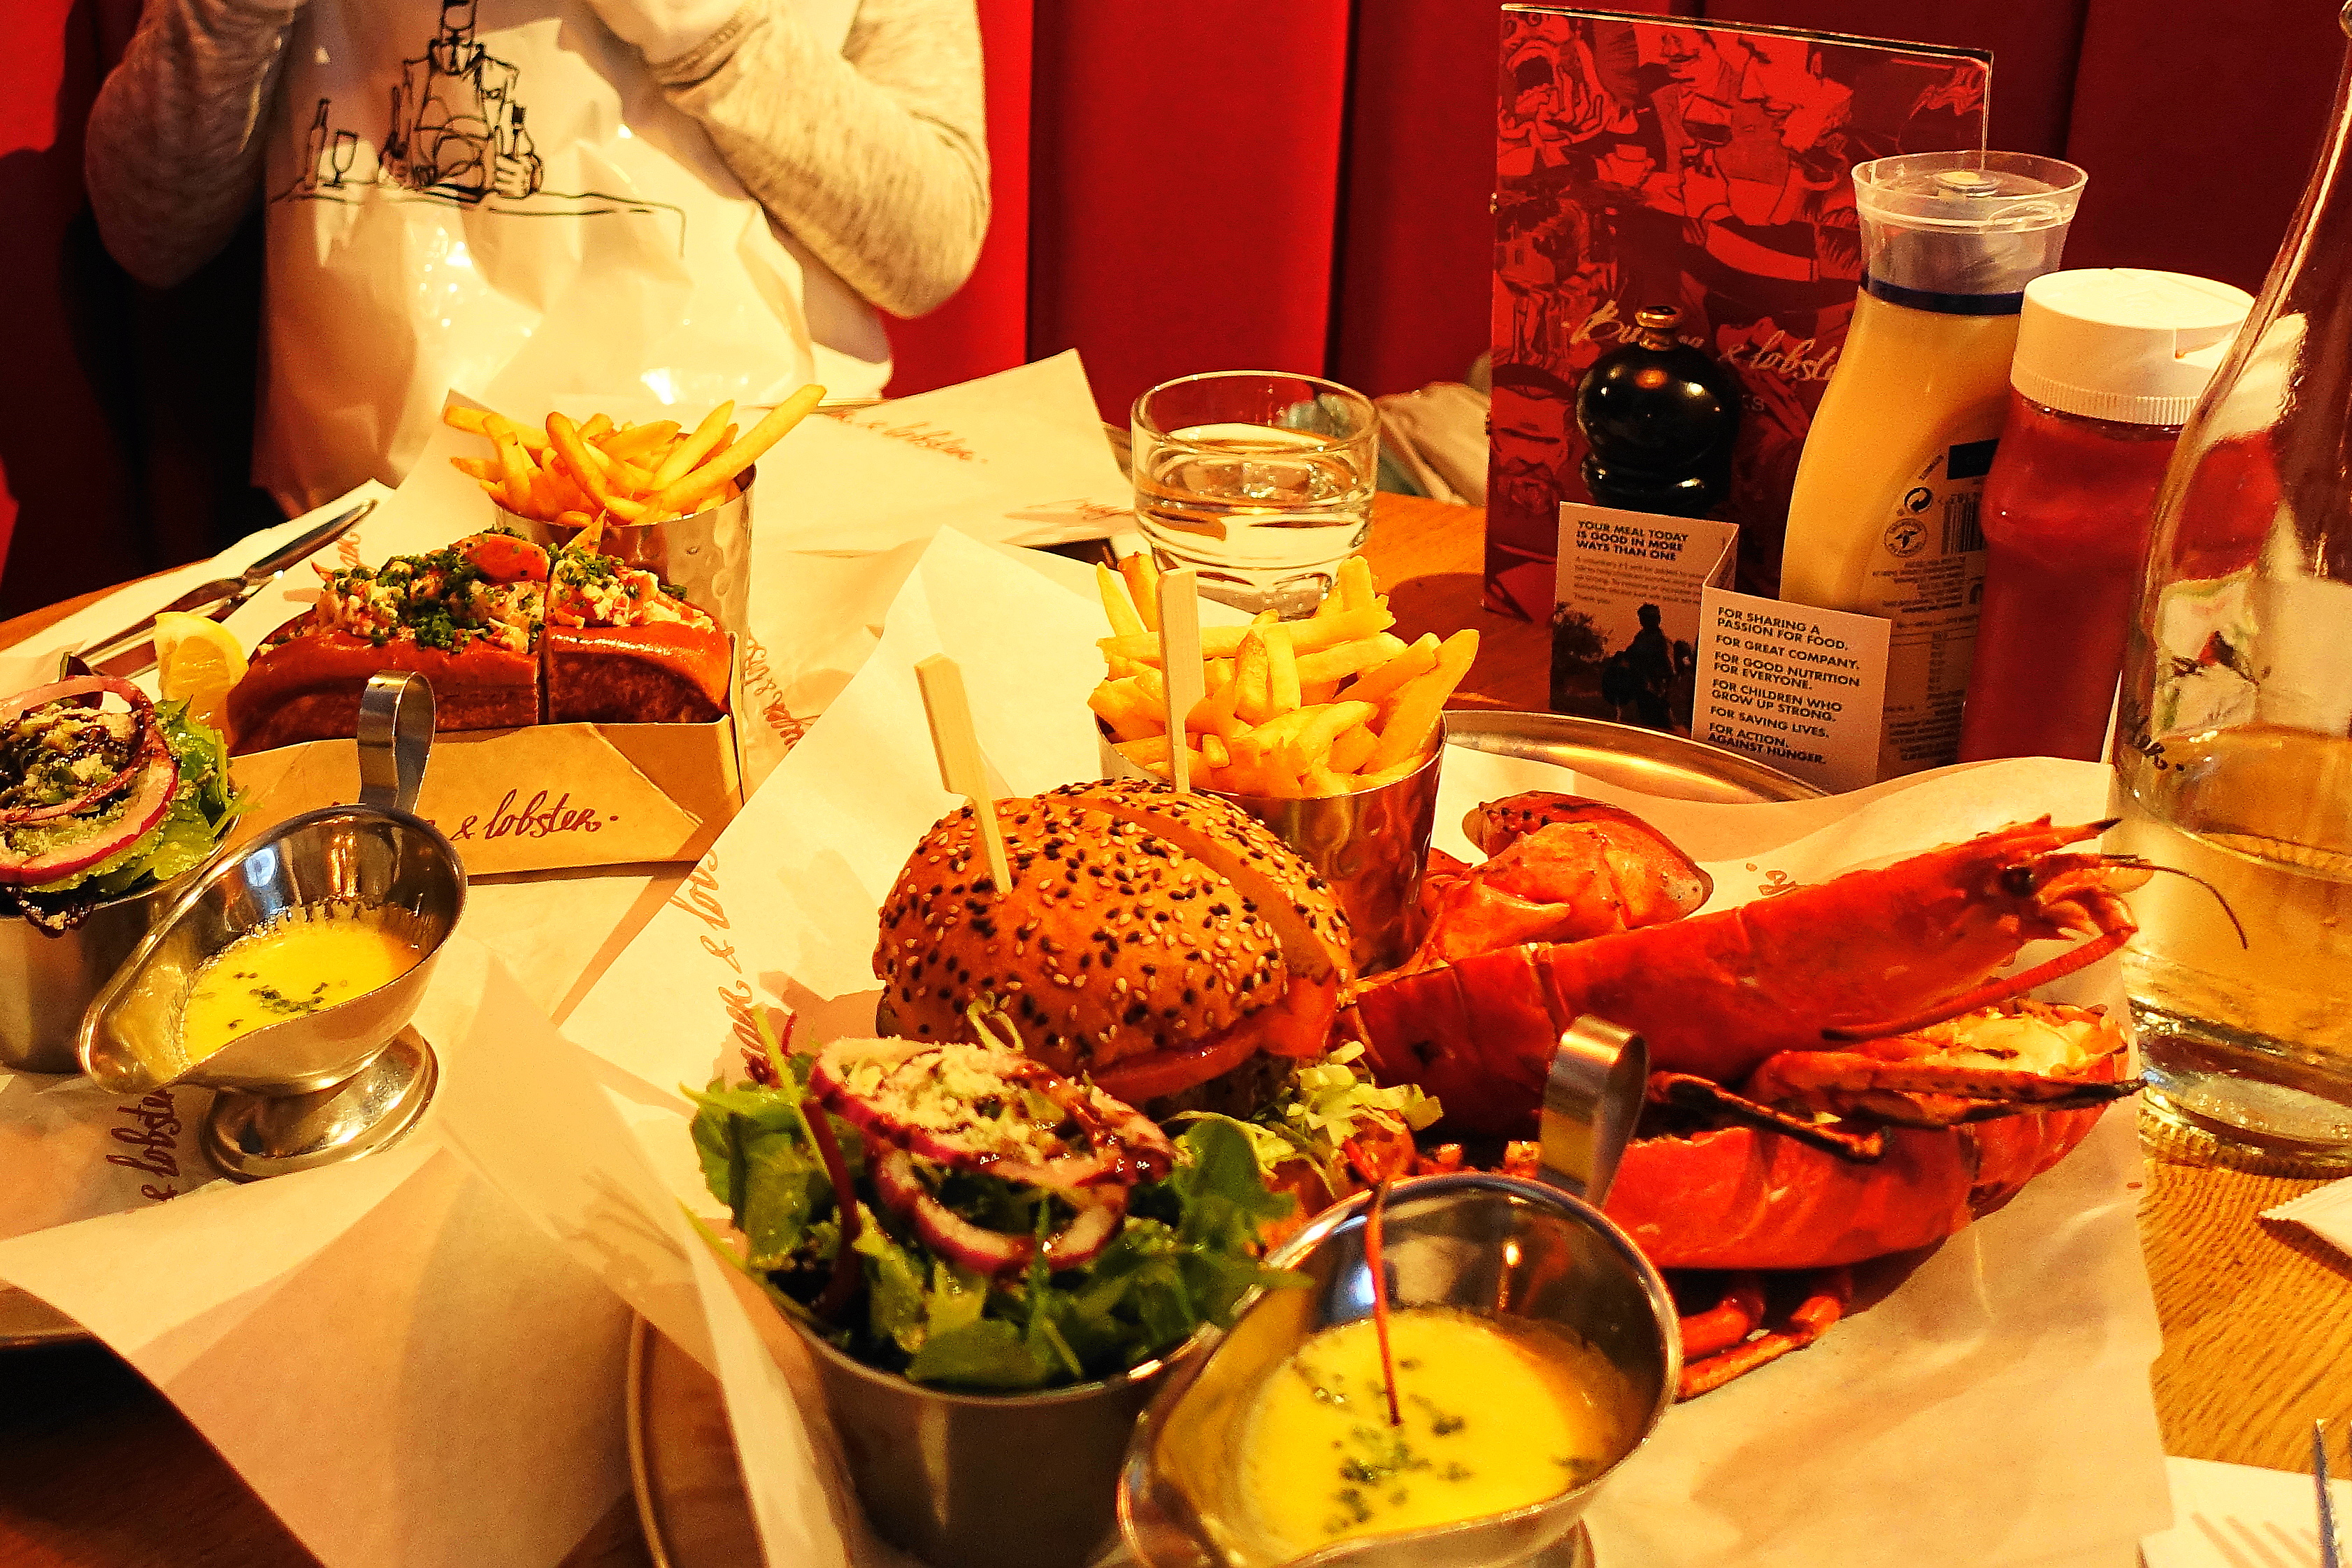 到曼彻斯特市中心游览，找到了Lobster & Burger在曼彻斯特的分店，自然在这里打发了午餐：